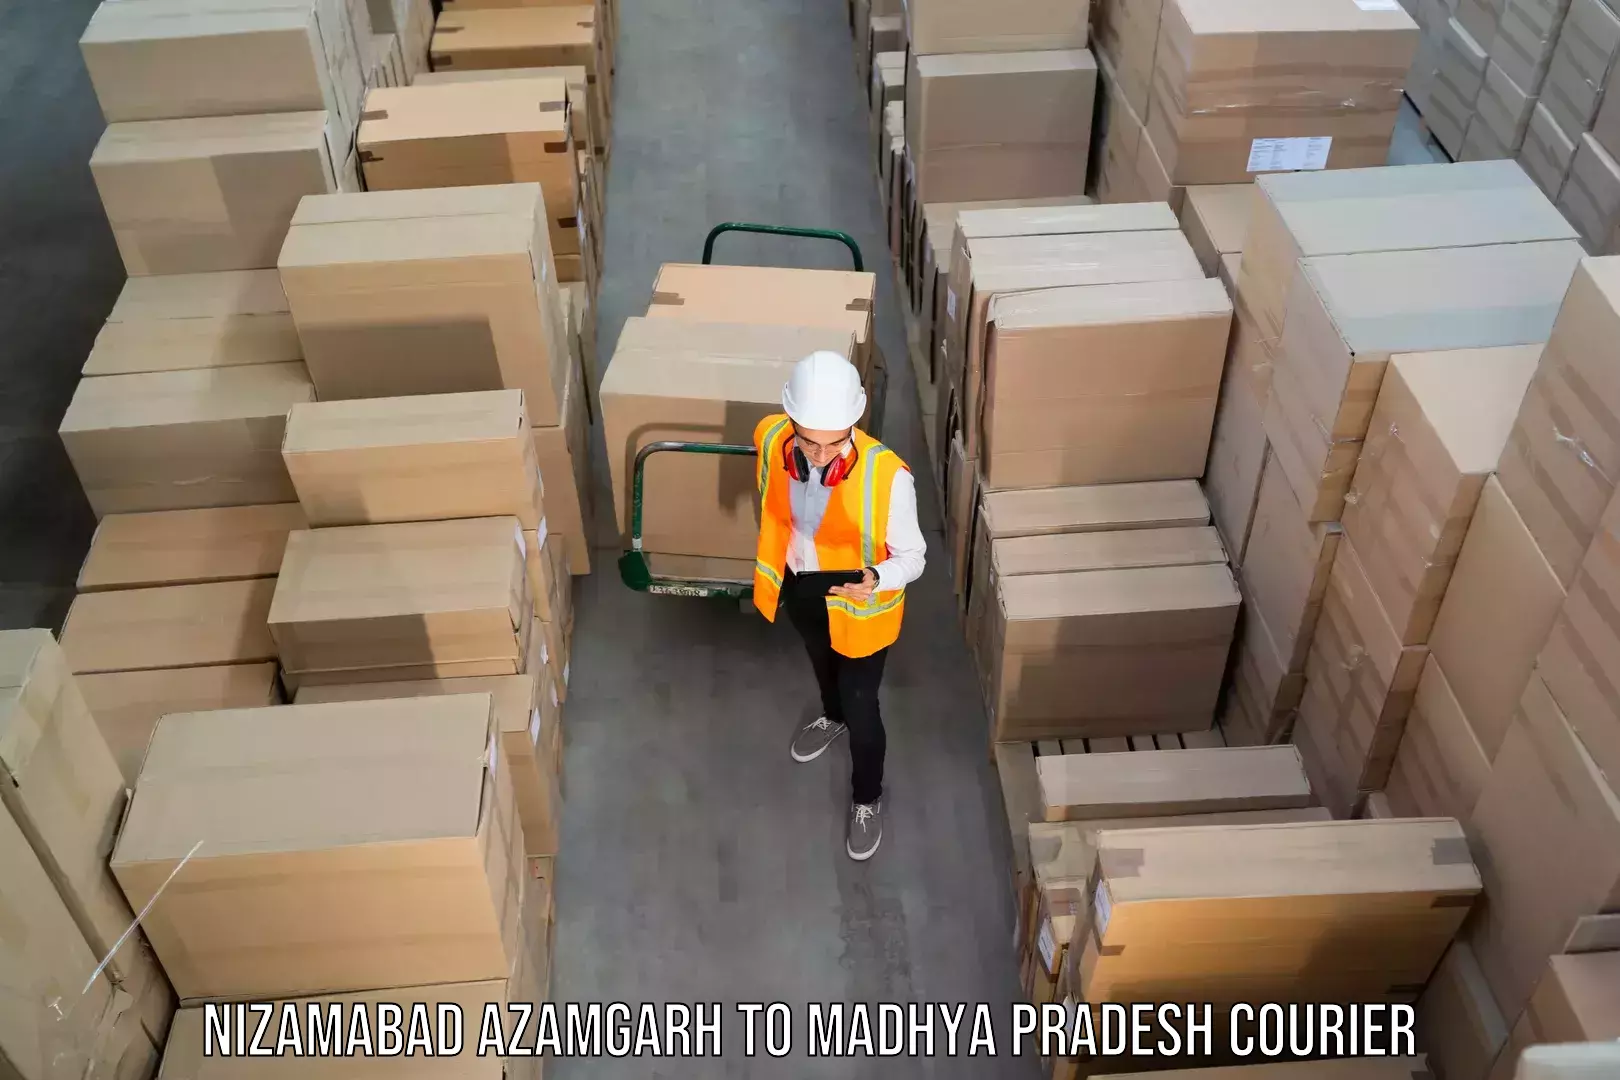 Pharmaceutical courier Nizamabad Azamgarh to Madhya Pradesh